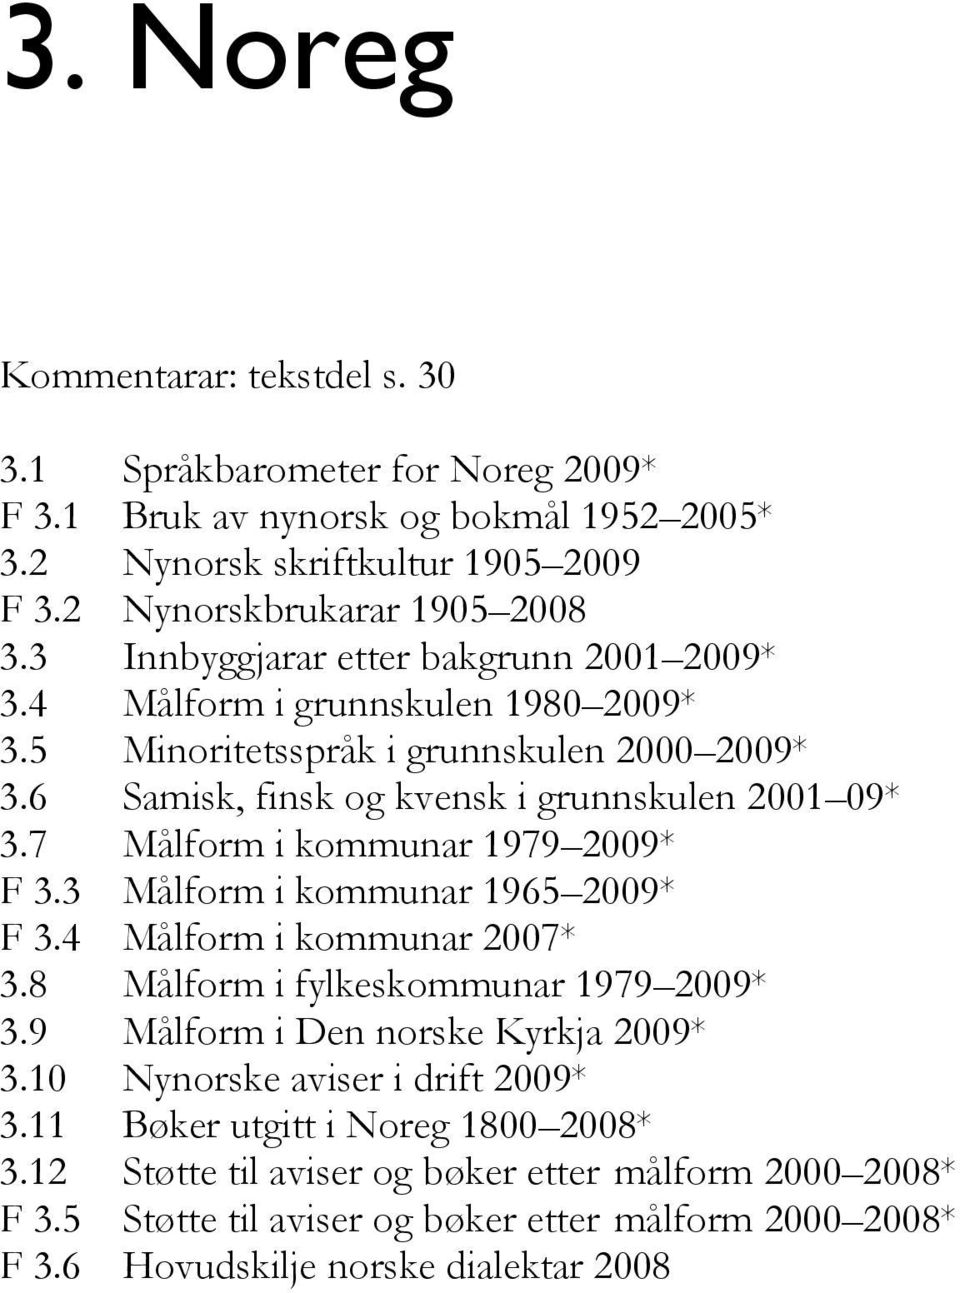 7 Målform i kommunar 1979 2009* F 3.3 Målform i kommunar 1965 2009* F 3.4 Målform i kommunar 2007* 3.8 Målform i fylkeskommunar 1979 2009* 3.9 Målform i Den norske Kyrkja 2009* 3.